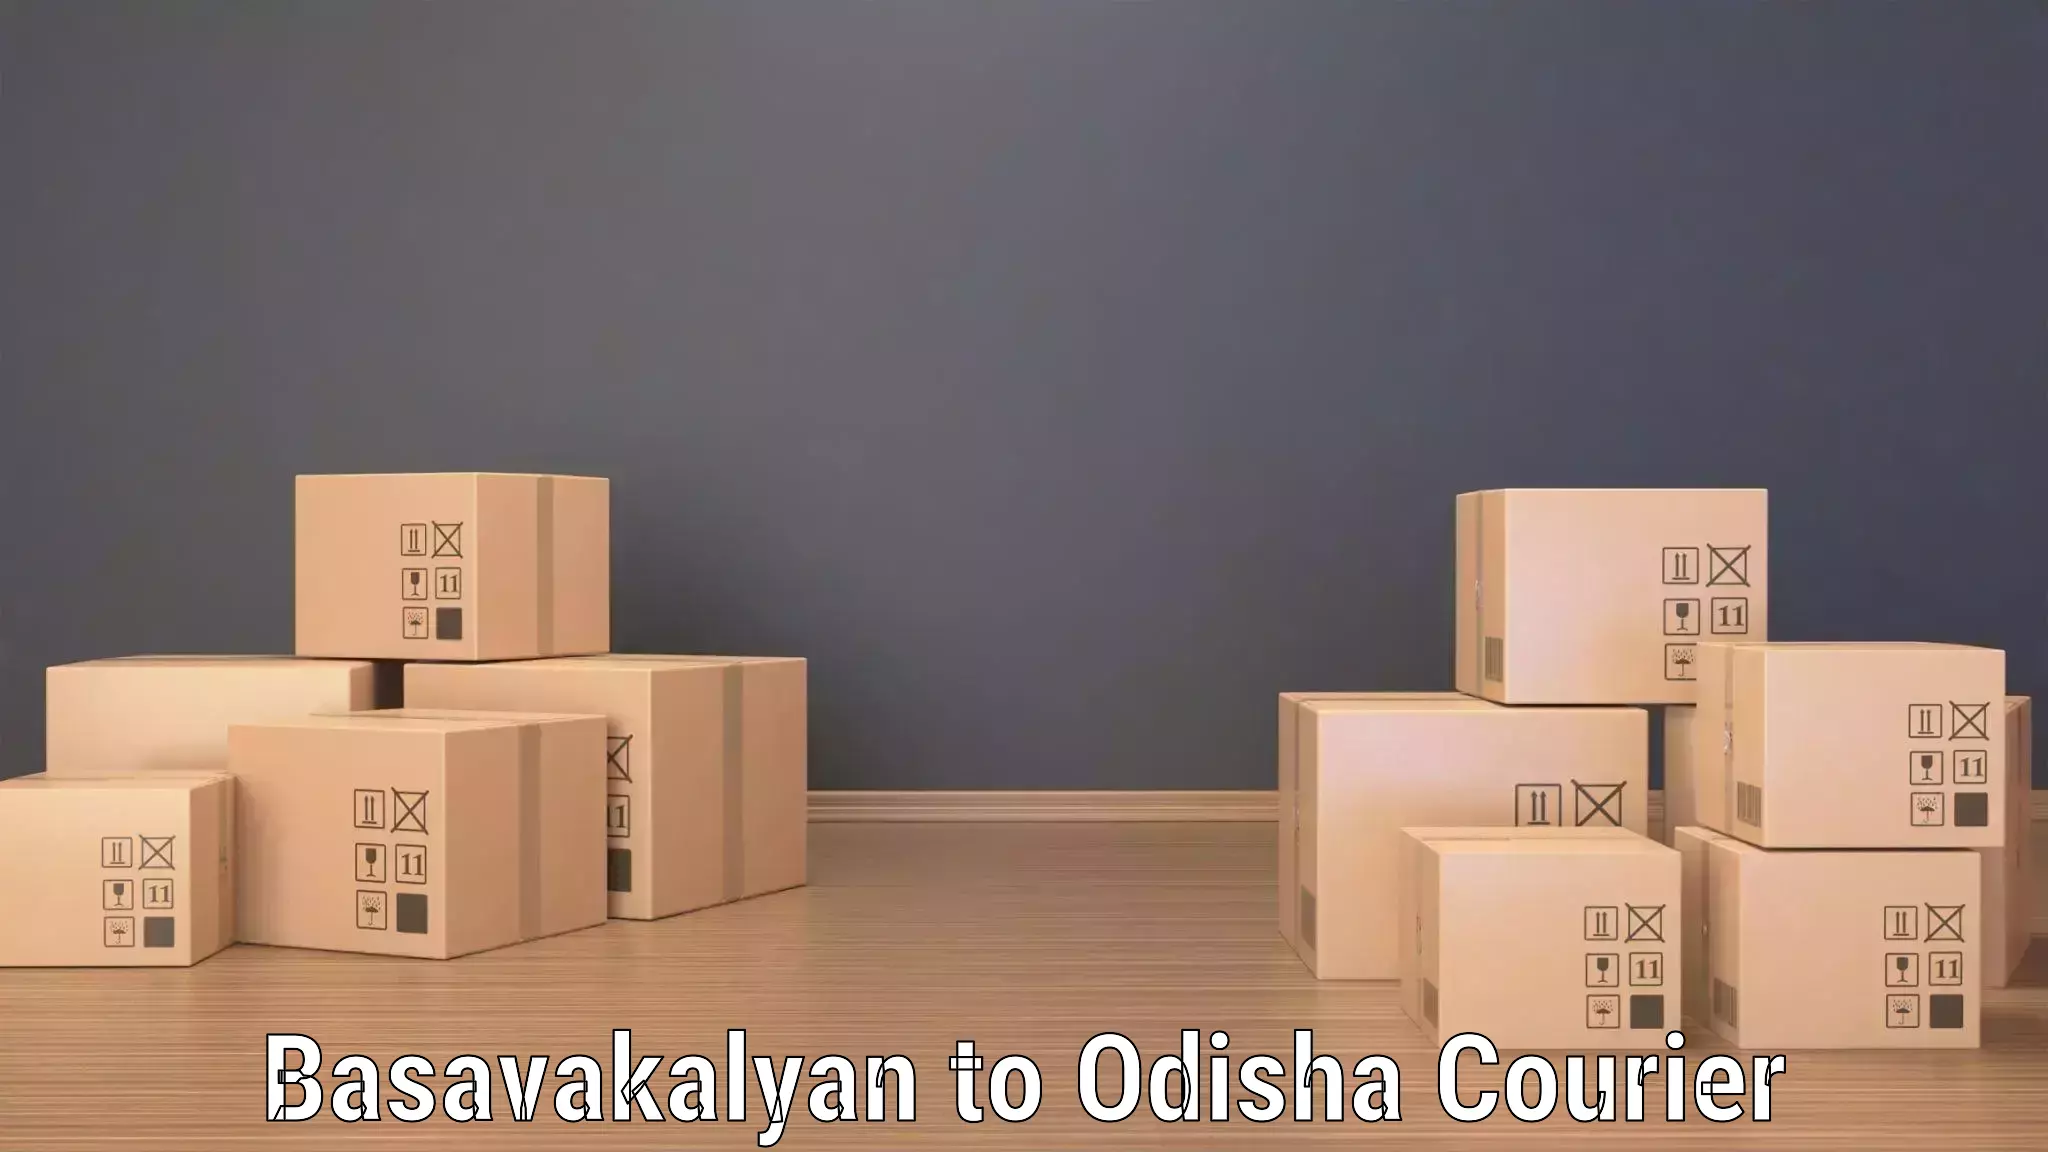 Express delivery network Basavakalyan to Kesinga